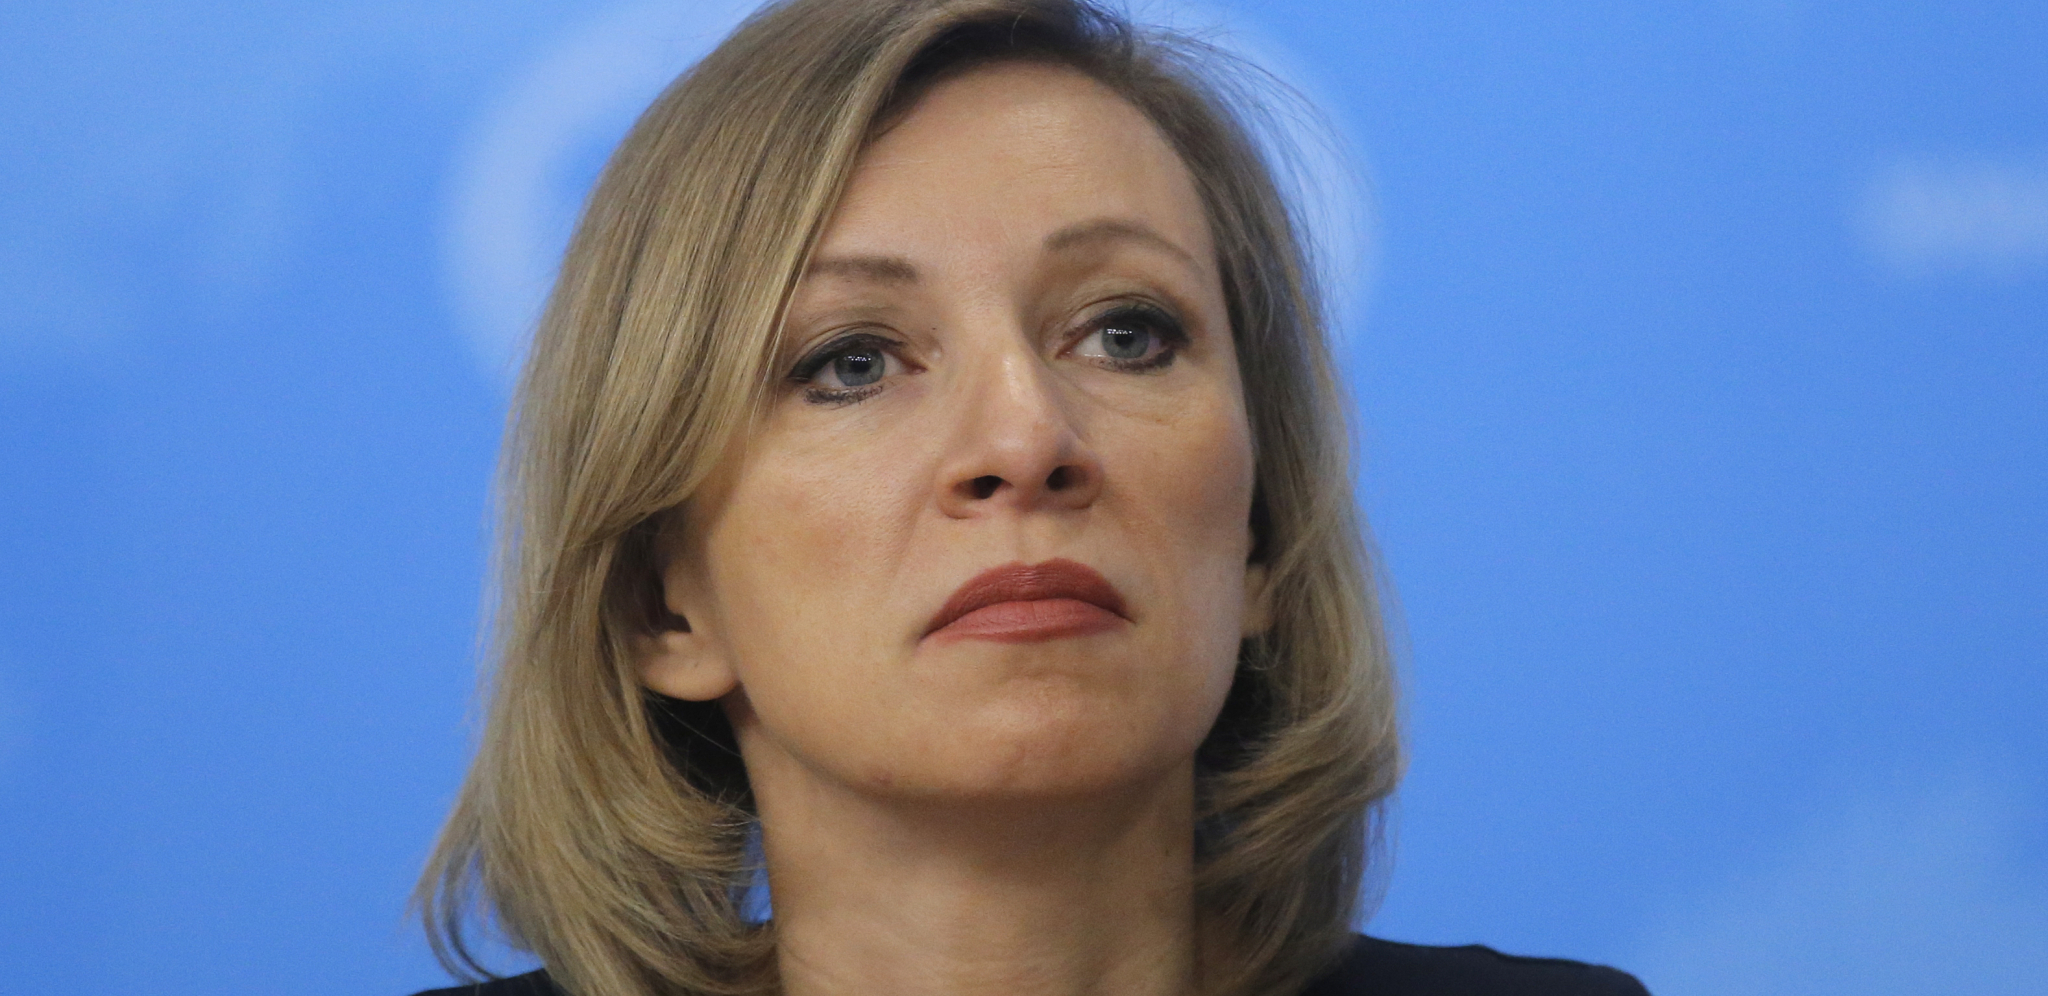 "MRZIM RUSE" Veliki diplomatski skandal potresao Rusiju, oglasila se Zaharova!